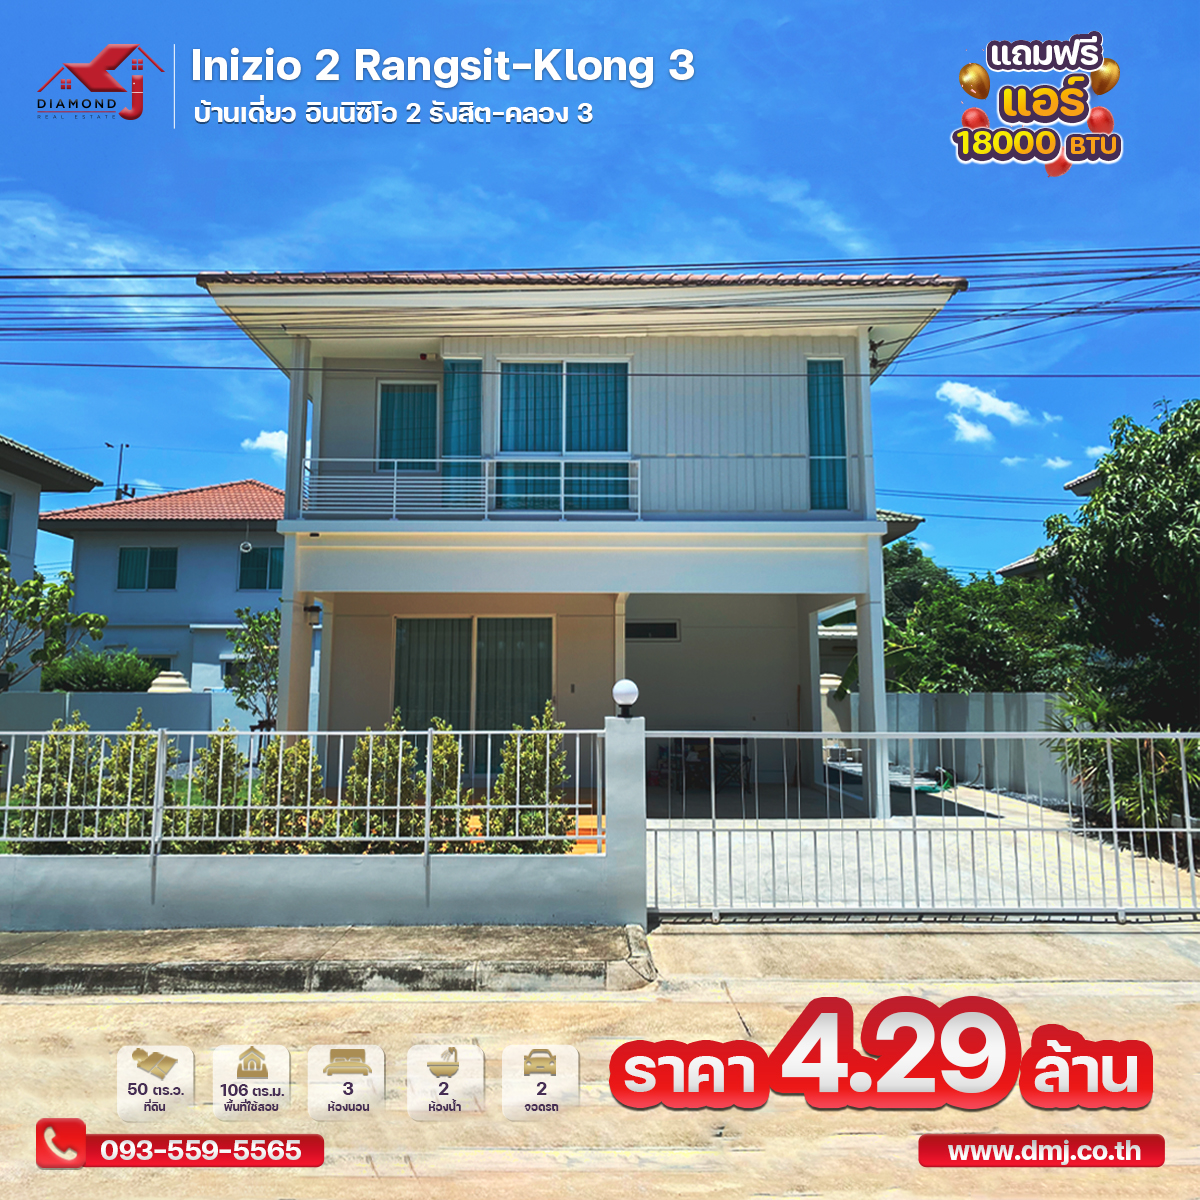 ขายบ้านเดี่ยว อินนิซิโอ 2 รังสิต-คลอง 3 Inizio 2 Rangsit-Klong 3 รูปที่ 1